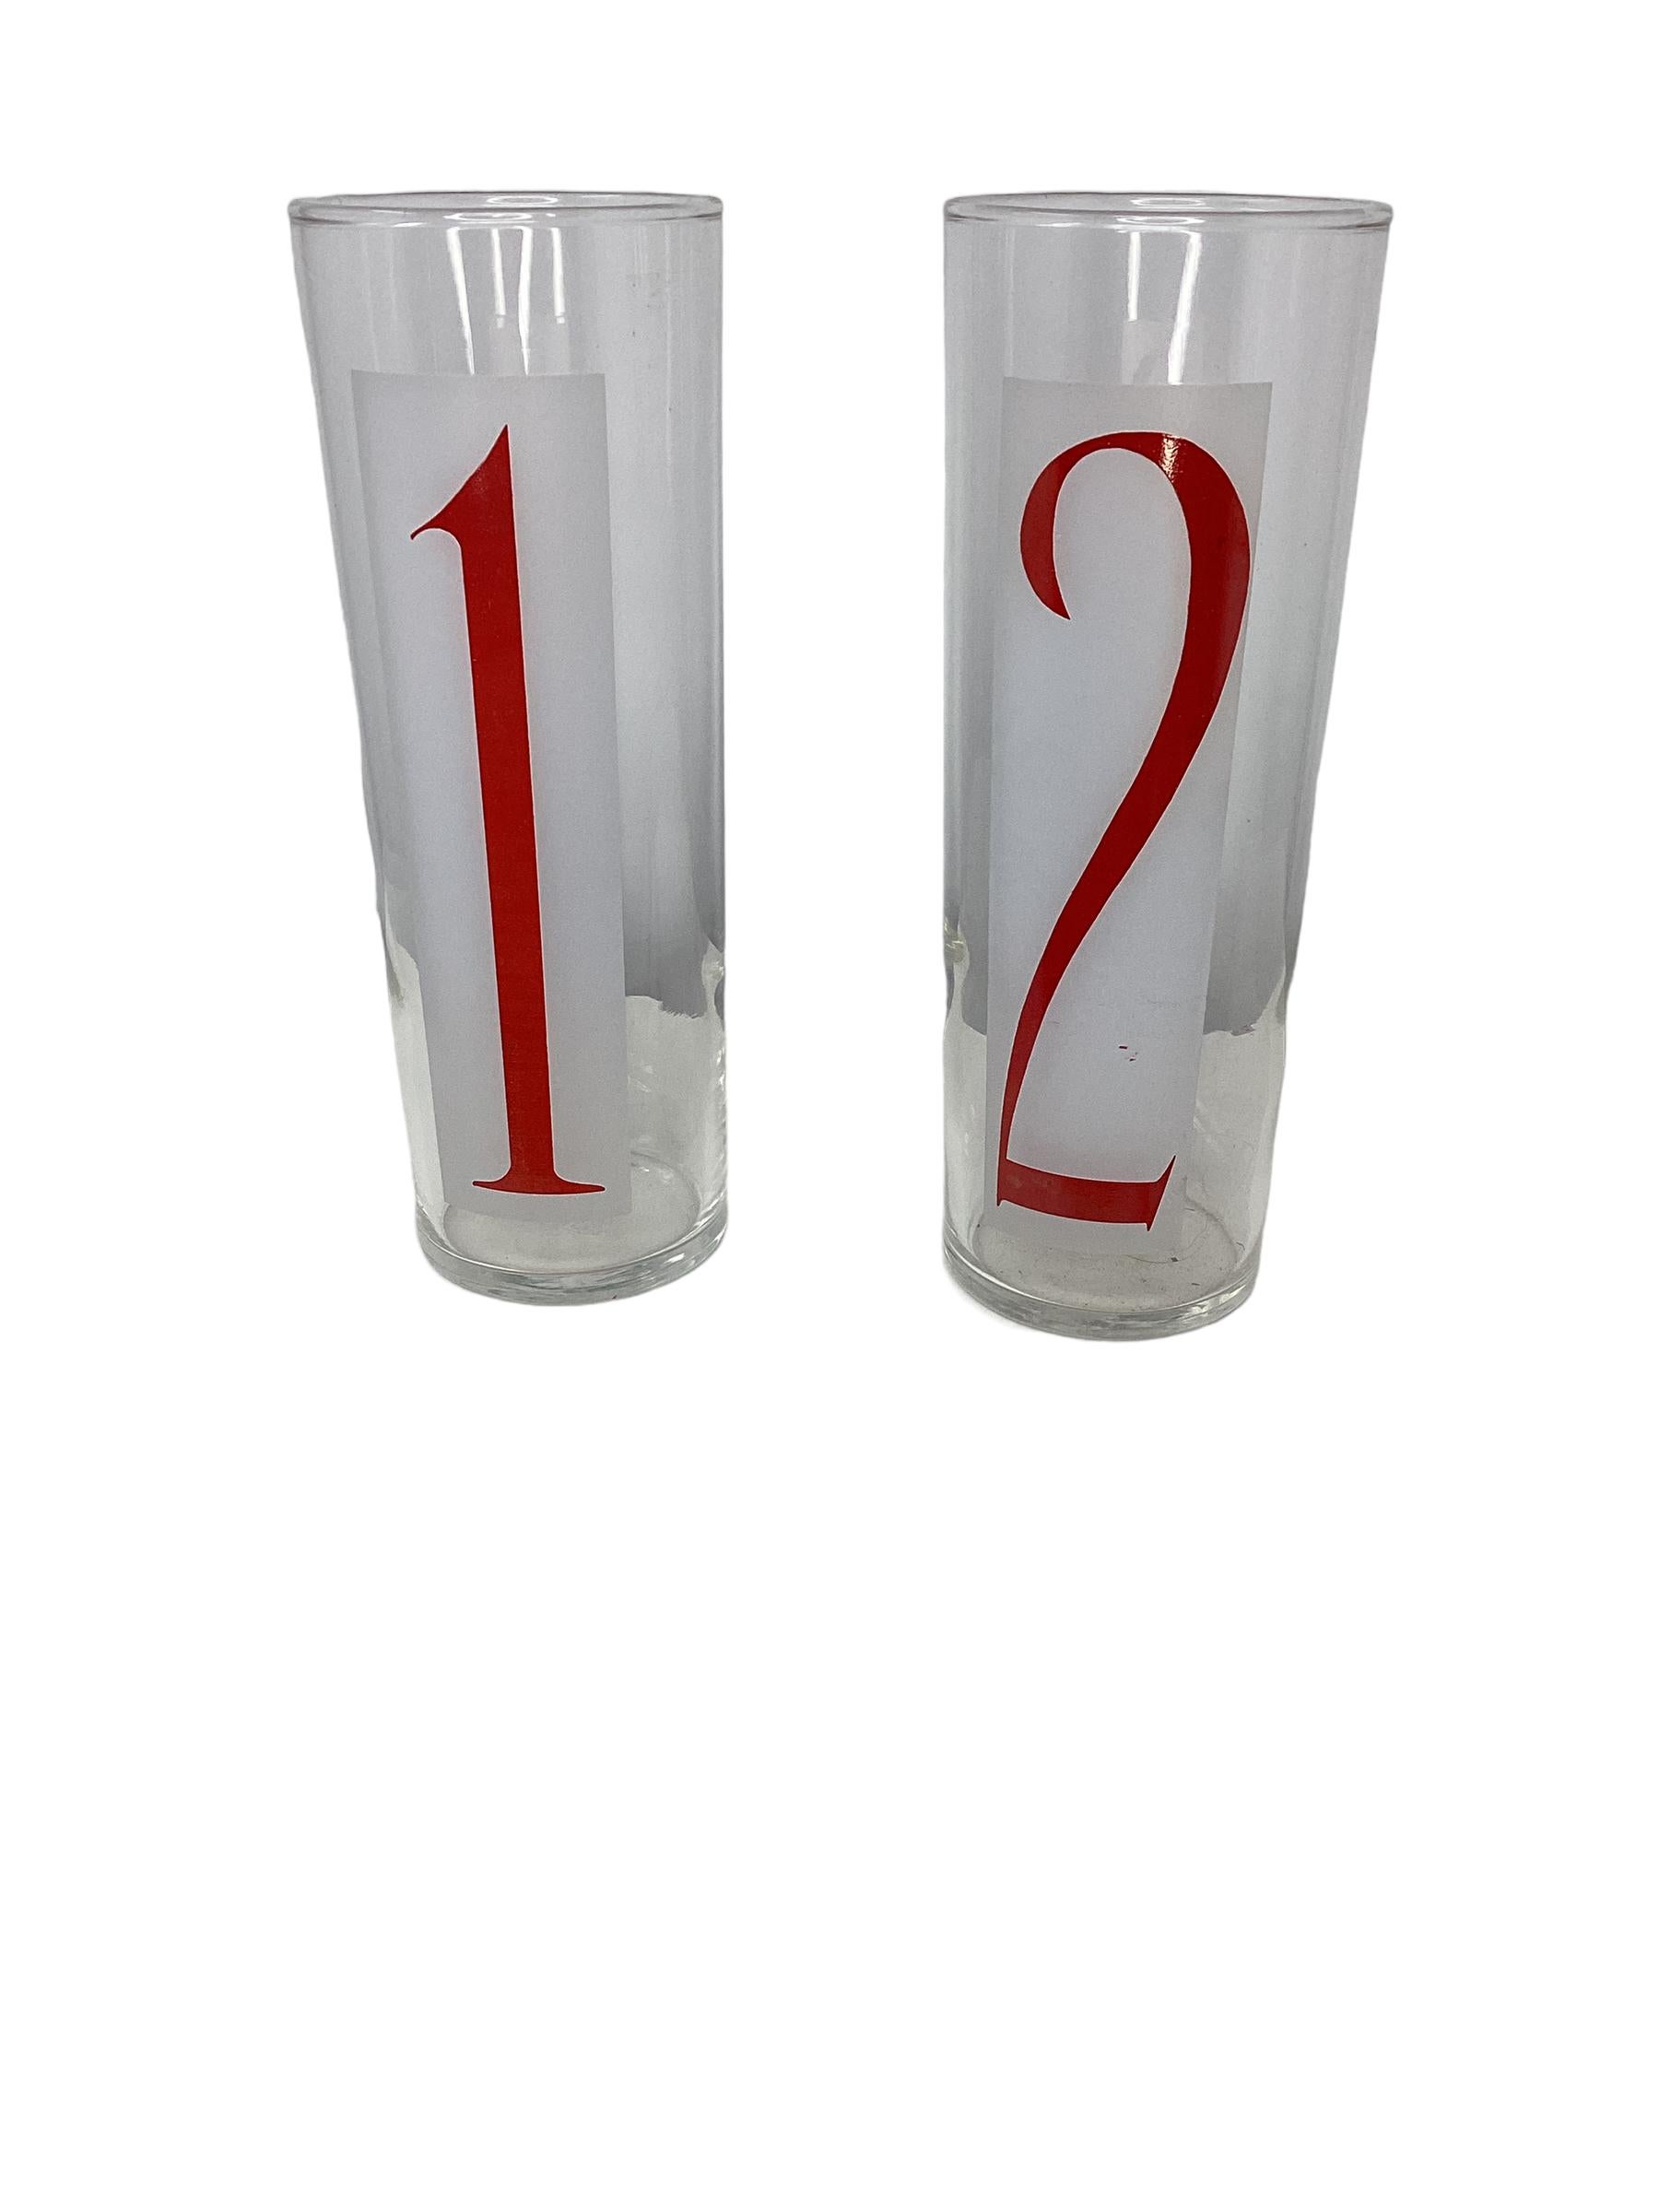 Ensemble de 8 glacières en verre Vintage By Feders. Grandes lunettes élancées avec les chiffres 1-8 imprimés en rouge et en gras sur un fond givré. Parfait pour les cocktails d'été.